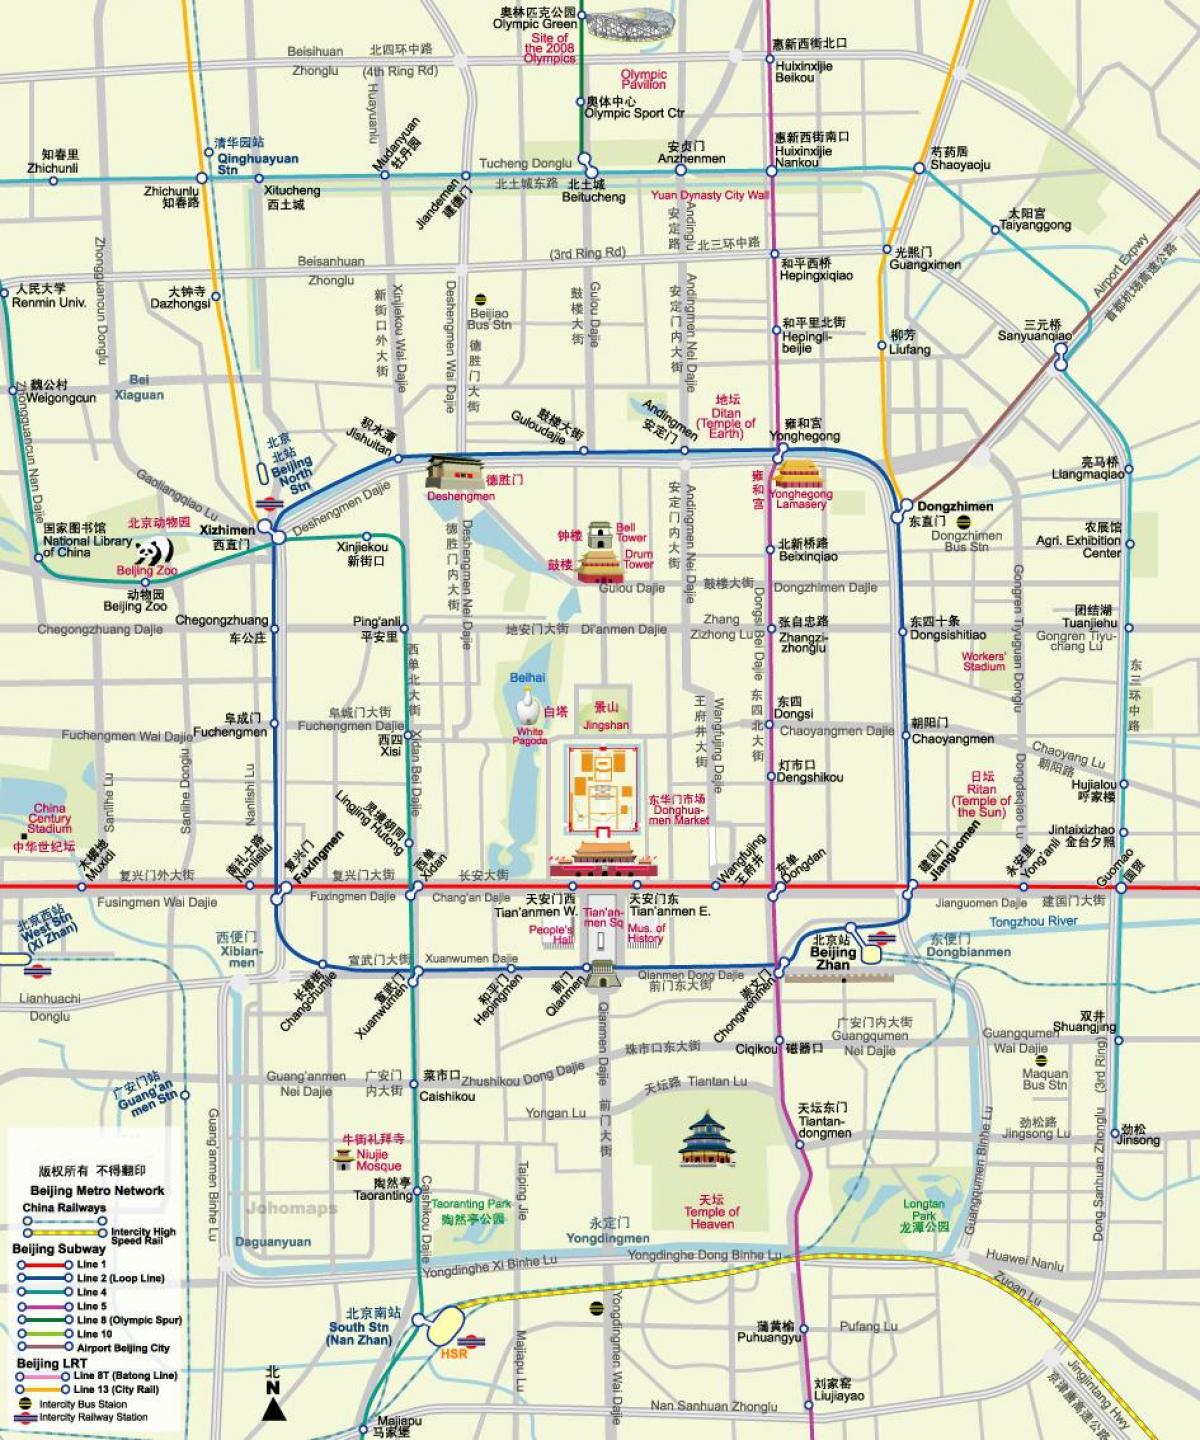 แผนที่ปักกิ่งมาถึงที่รถไฟใต้ดินแผนที่กับนักท่องเที่ยวหน่อย attractions